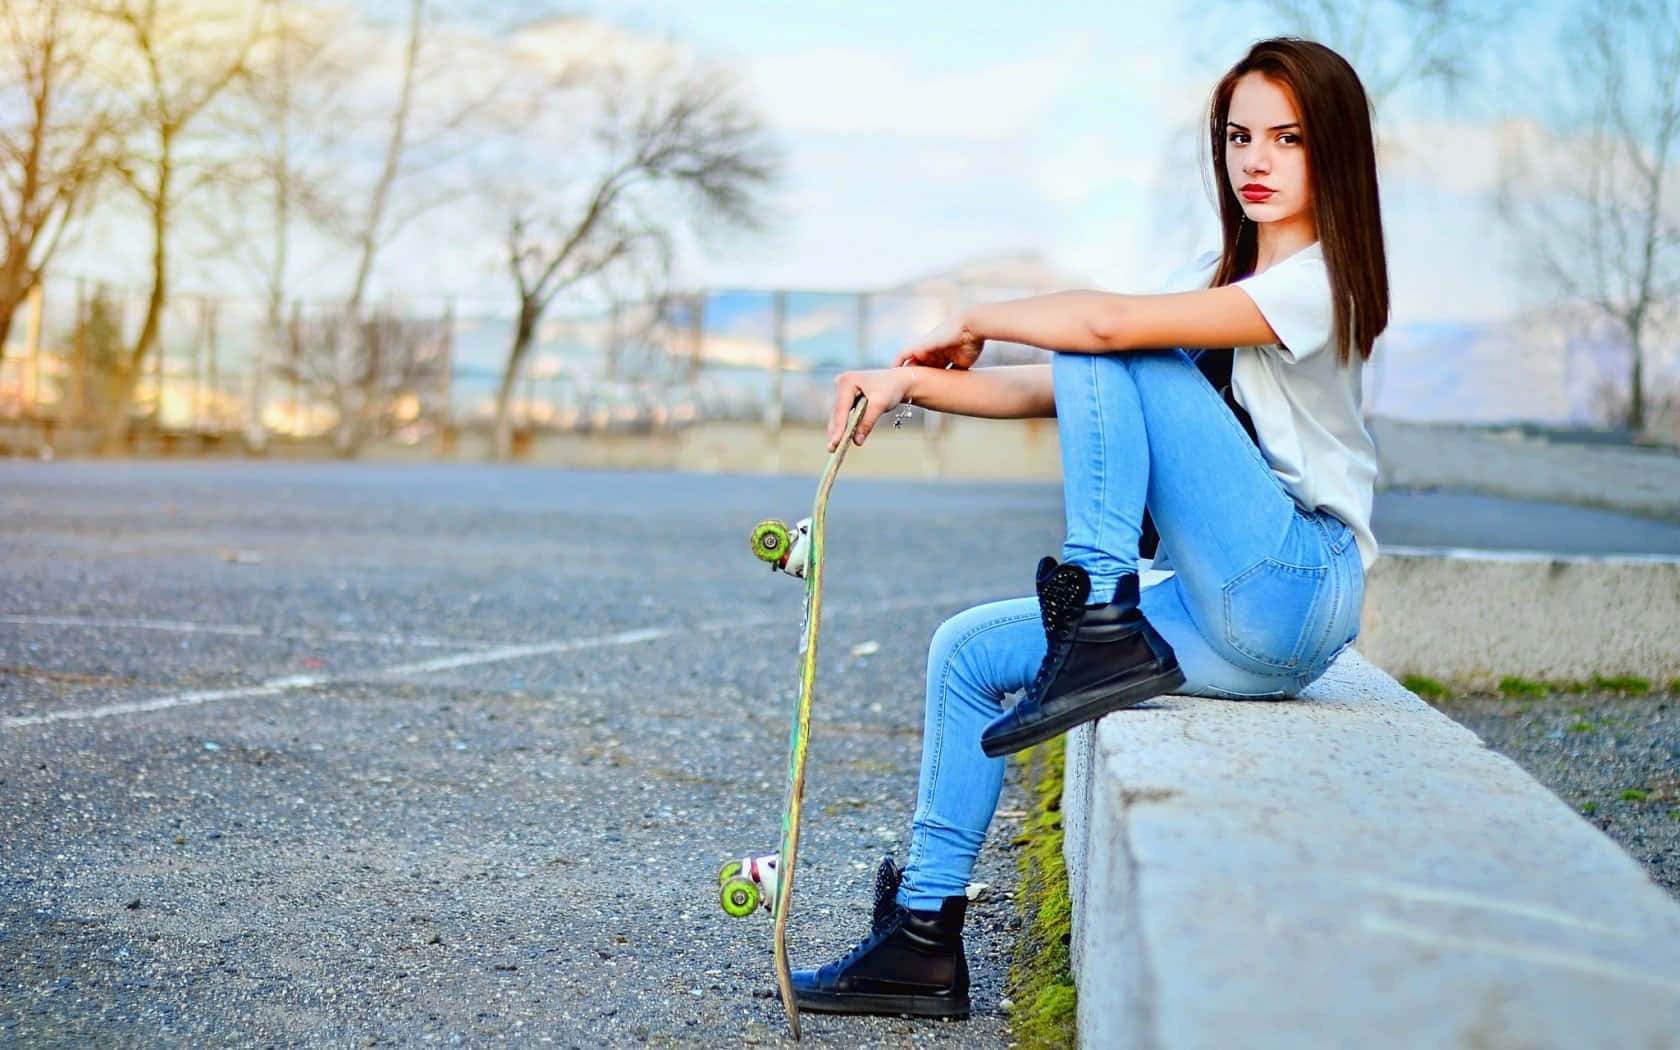 Skateboardfahrendes Mädchen In Jeans Bildern